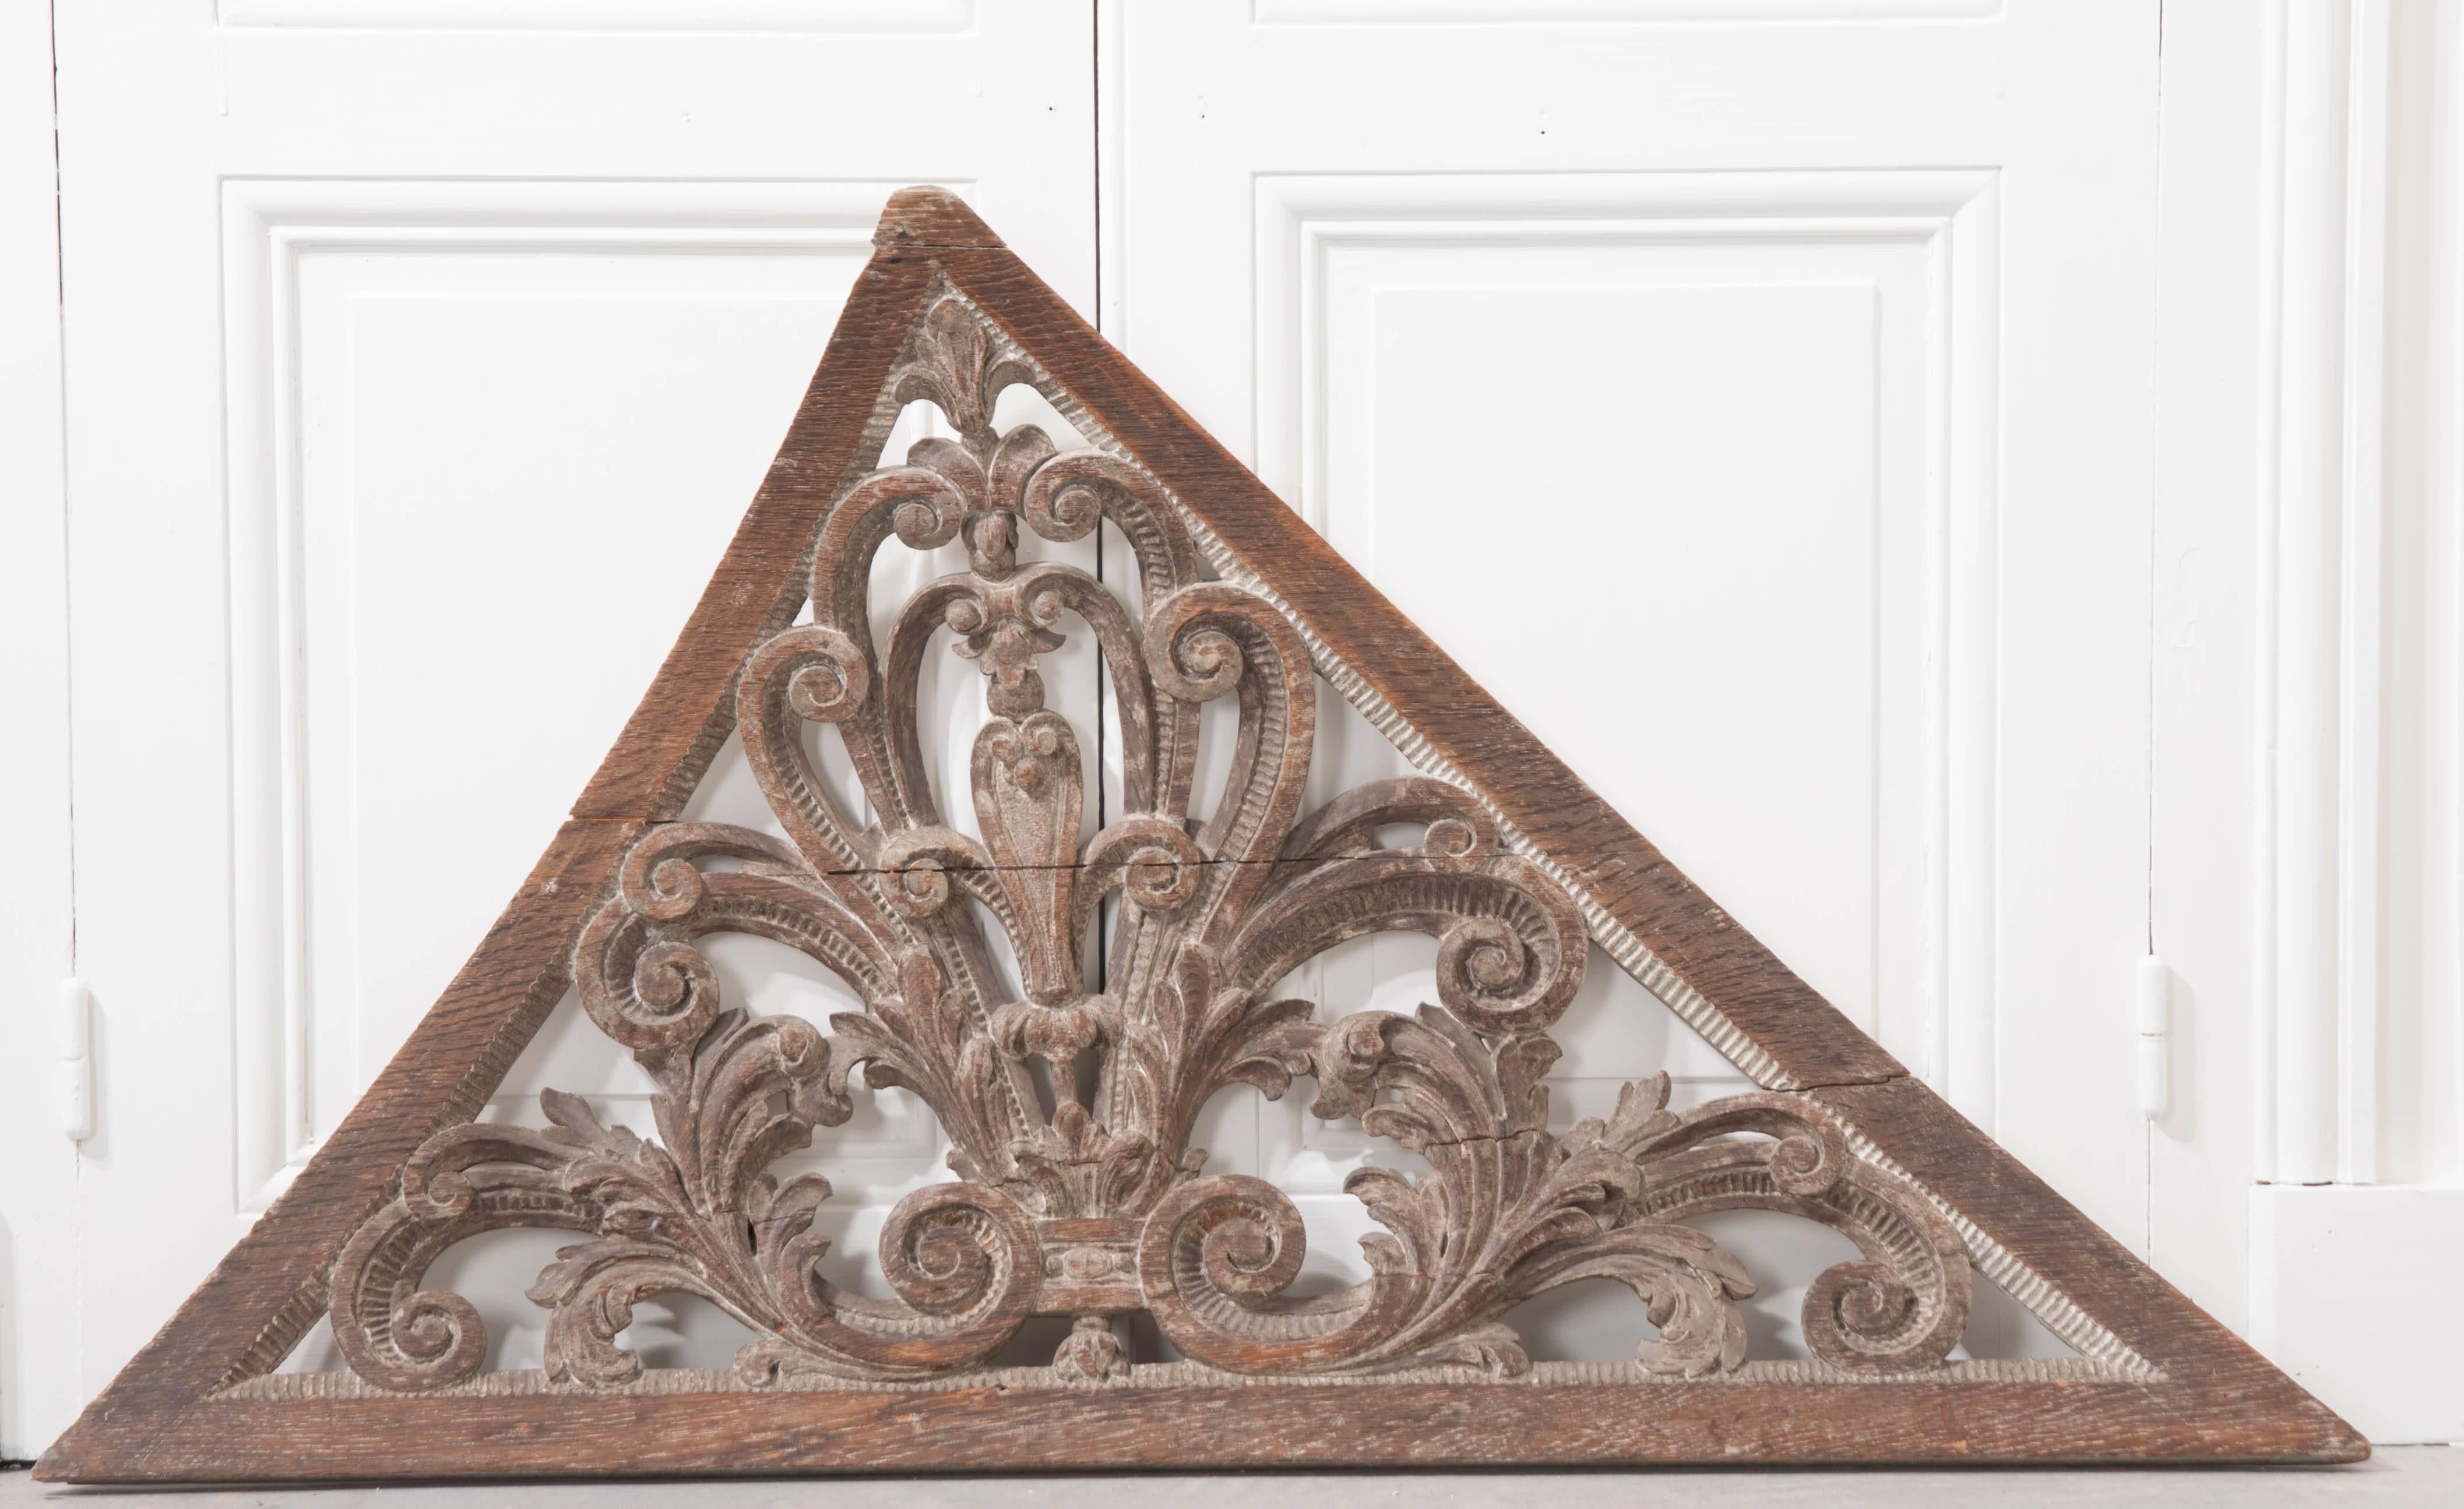 Ein meisterhaft geschnitztes Treppenhausornament aus der ersten Hälfte des 18. Jahrhunderts, Schweden. Dieses geschwungene dekorative Detail aus dem Jahr 1730 war einst Teil einer großen Treppe. Das Ornament ist mit wunderschön geschnitzten